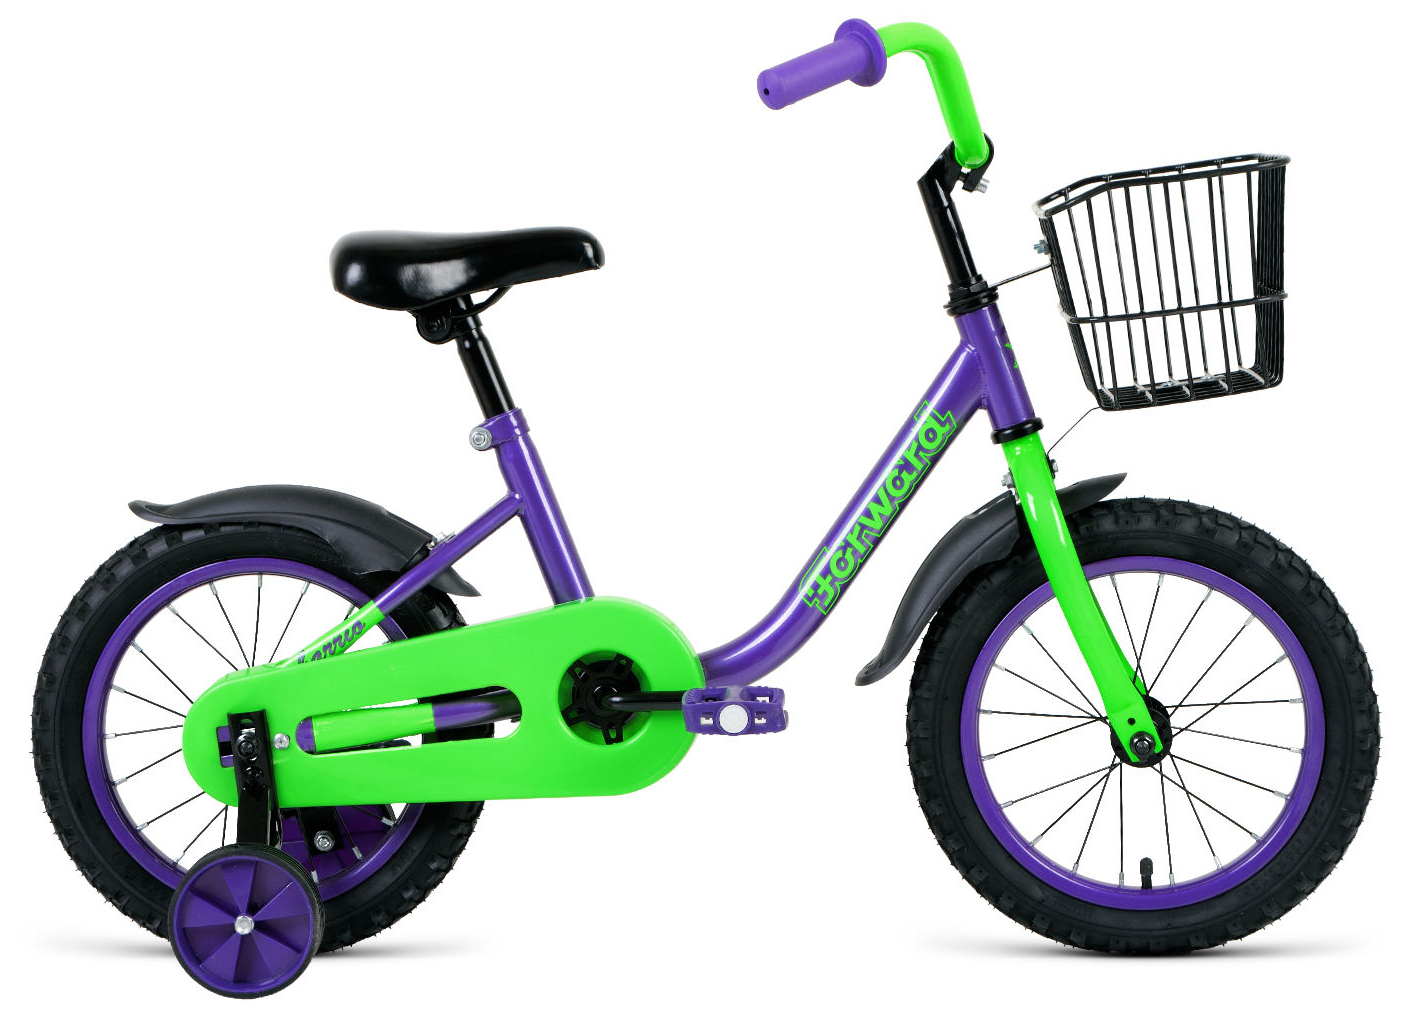  Отзывы о Детском велосипеде Forward Barrio 14 2020